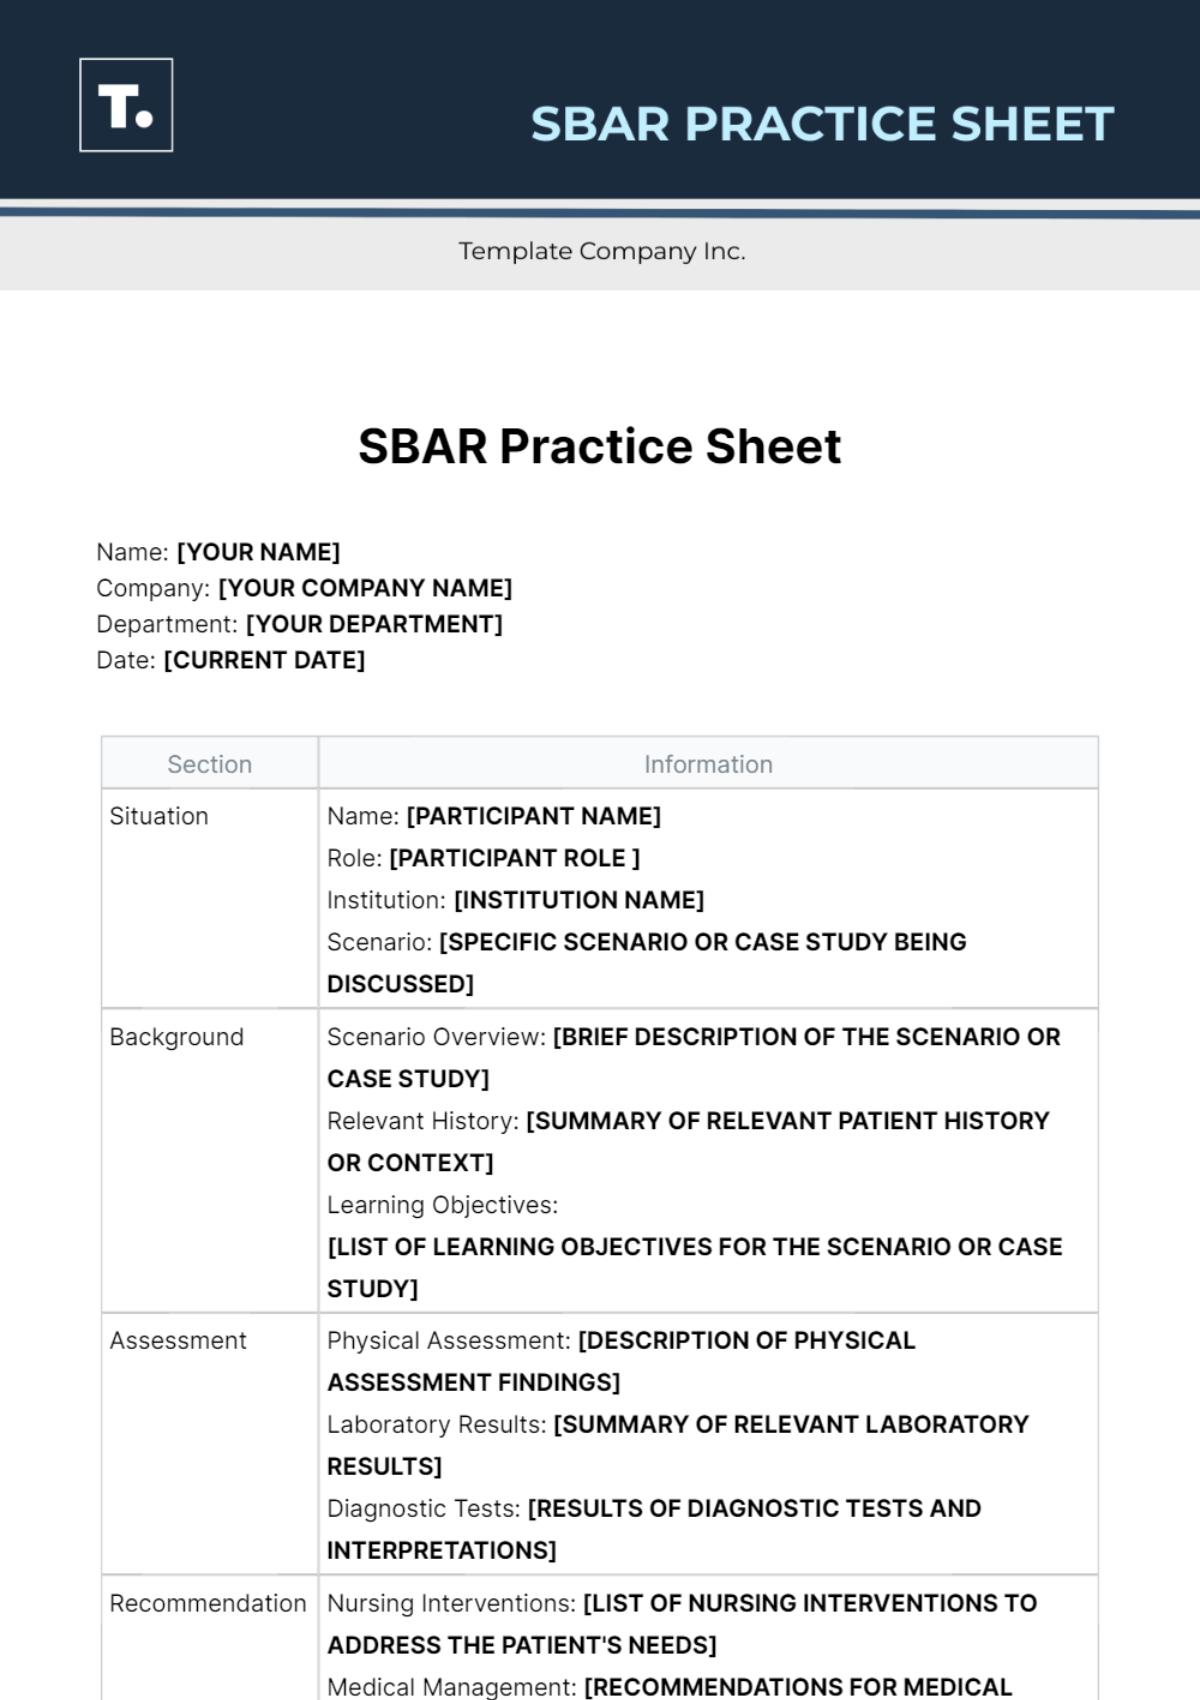 Free SBAR Practice Sheet Template